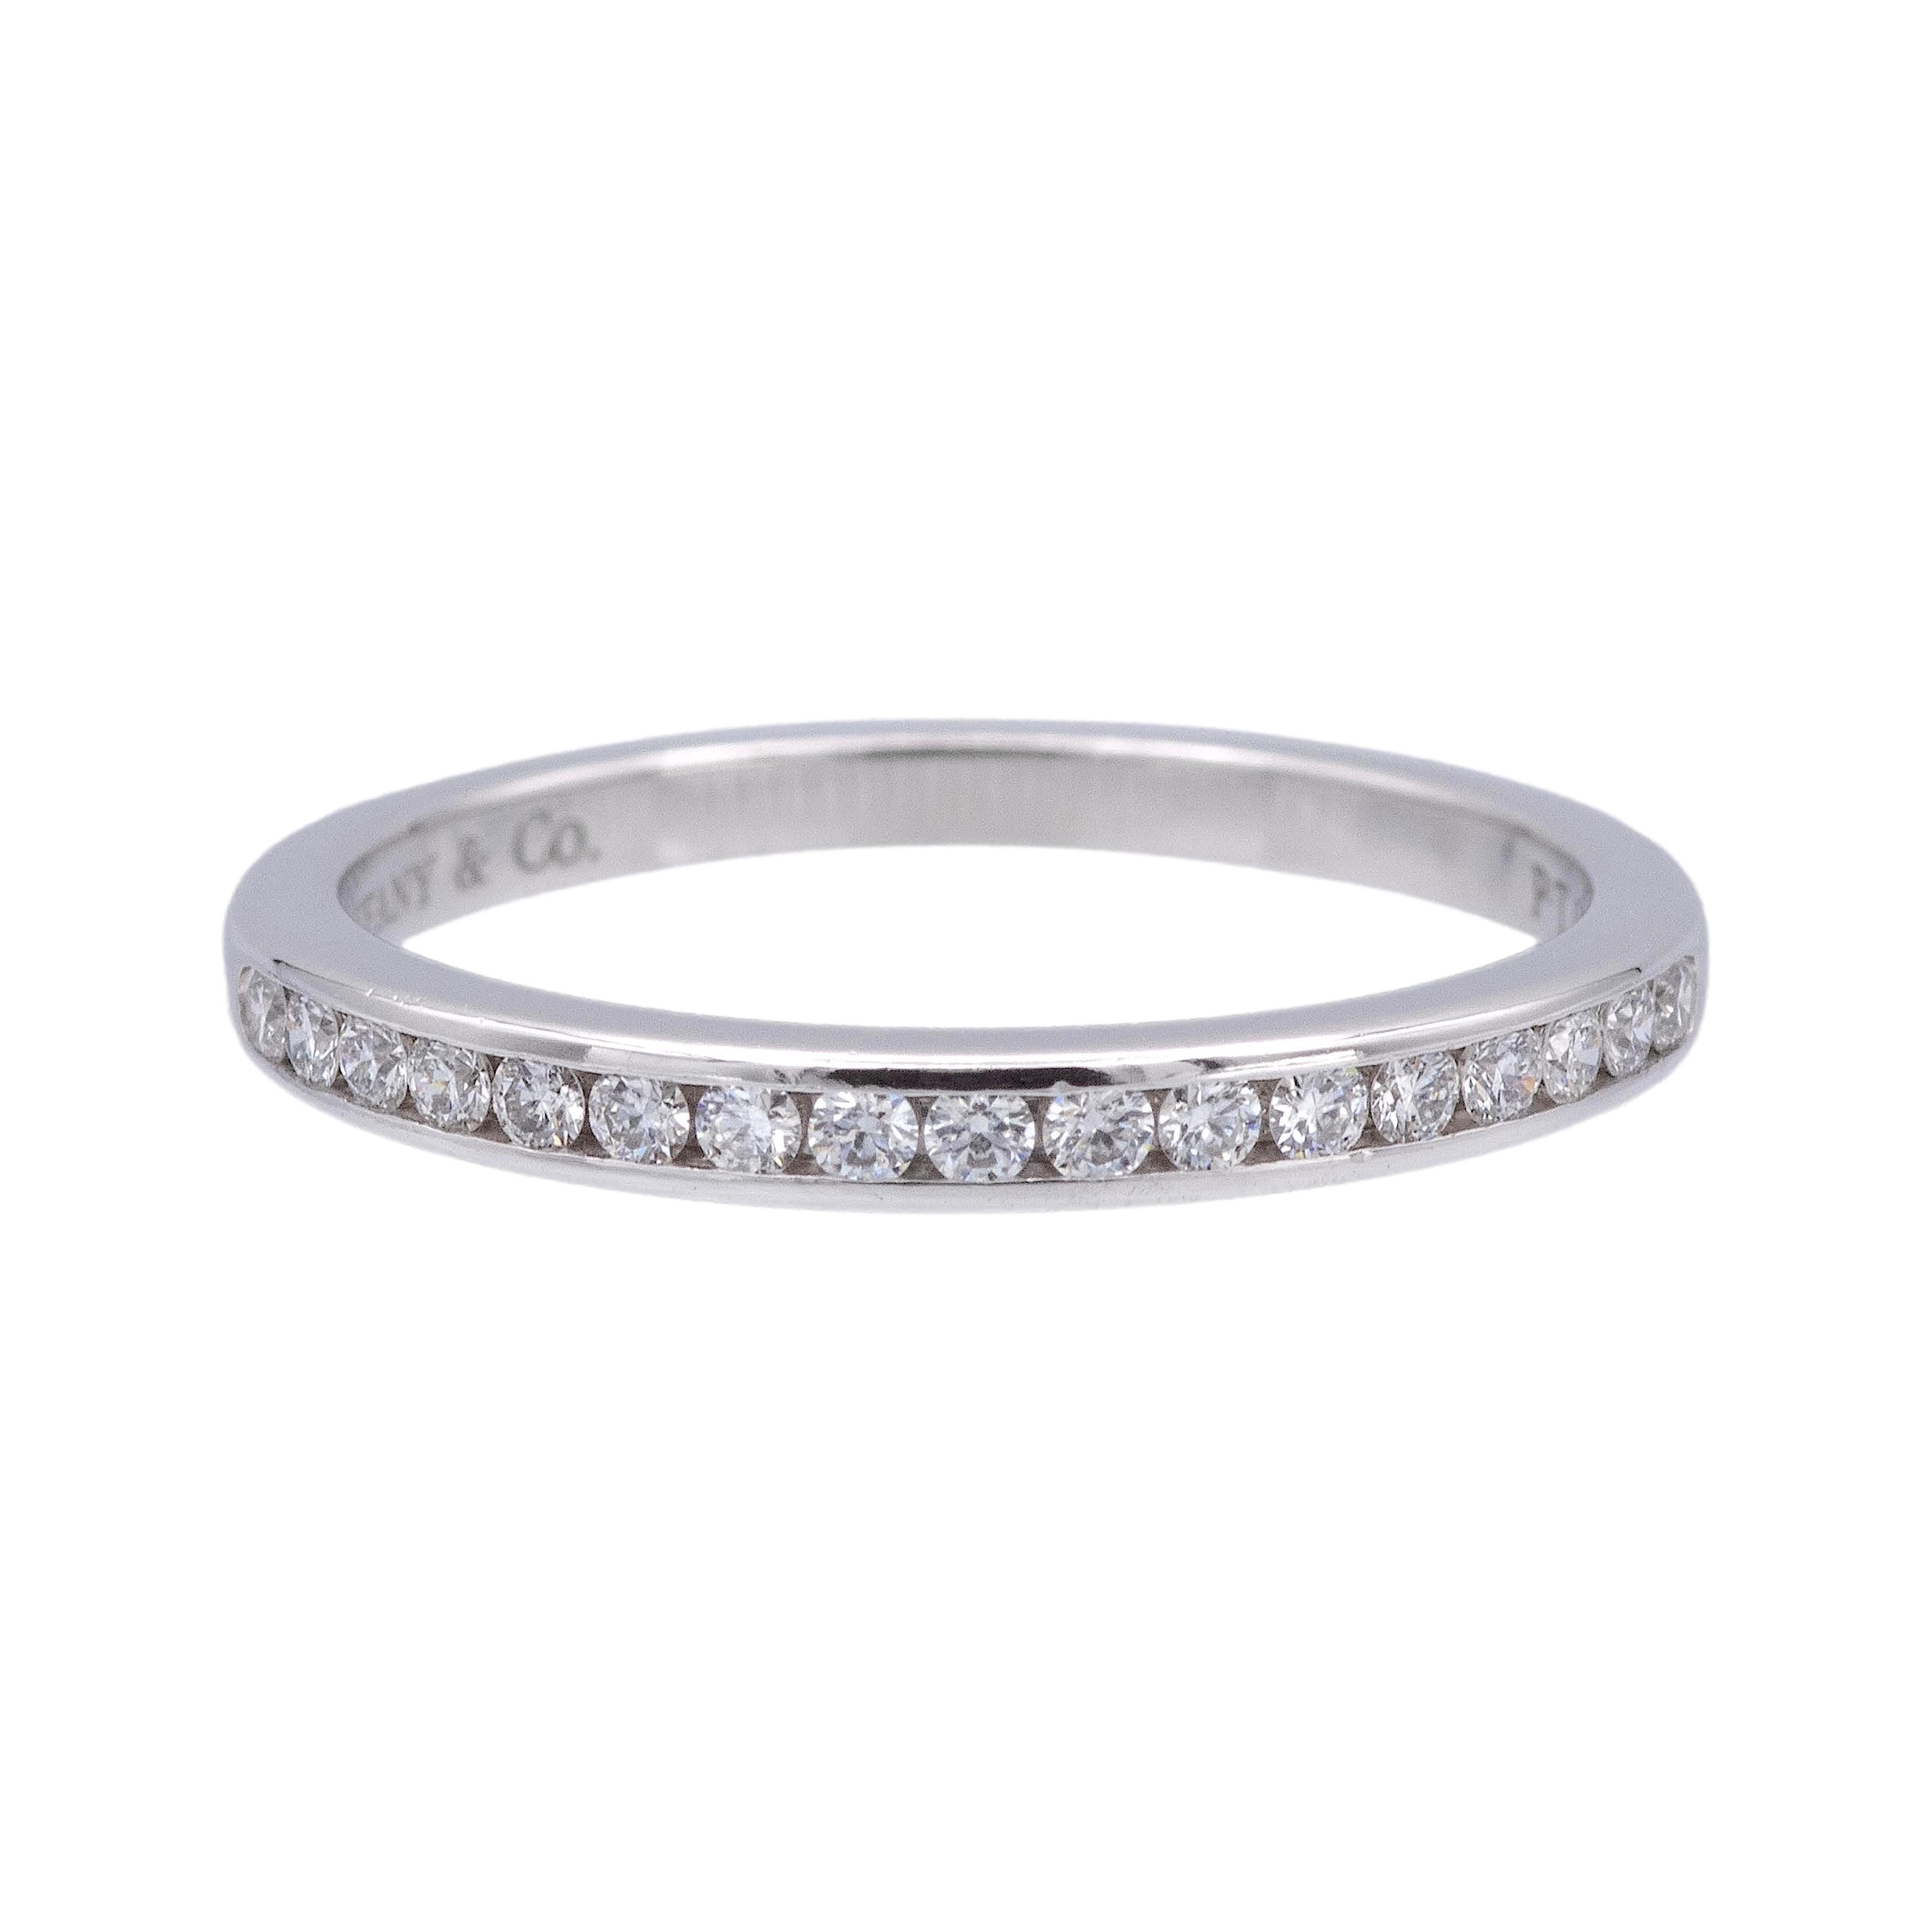 Anneau de mariage en demi-cercle de Tiffany & Co. de la collection Tiffany setting finement réalisé en platine mettant en valeur 17 diamants ronds de taille brillant pesant 0,17 carats de couleur D-G, de pureté IF- VS2, mesurant 2 mm de large. Peut